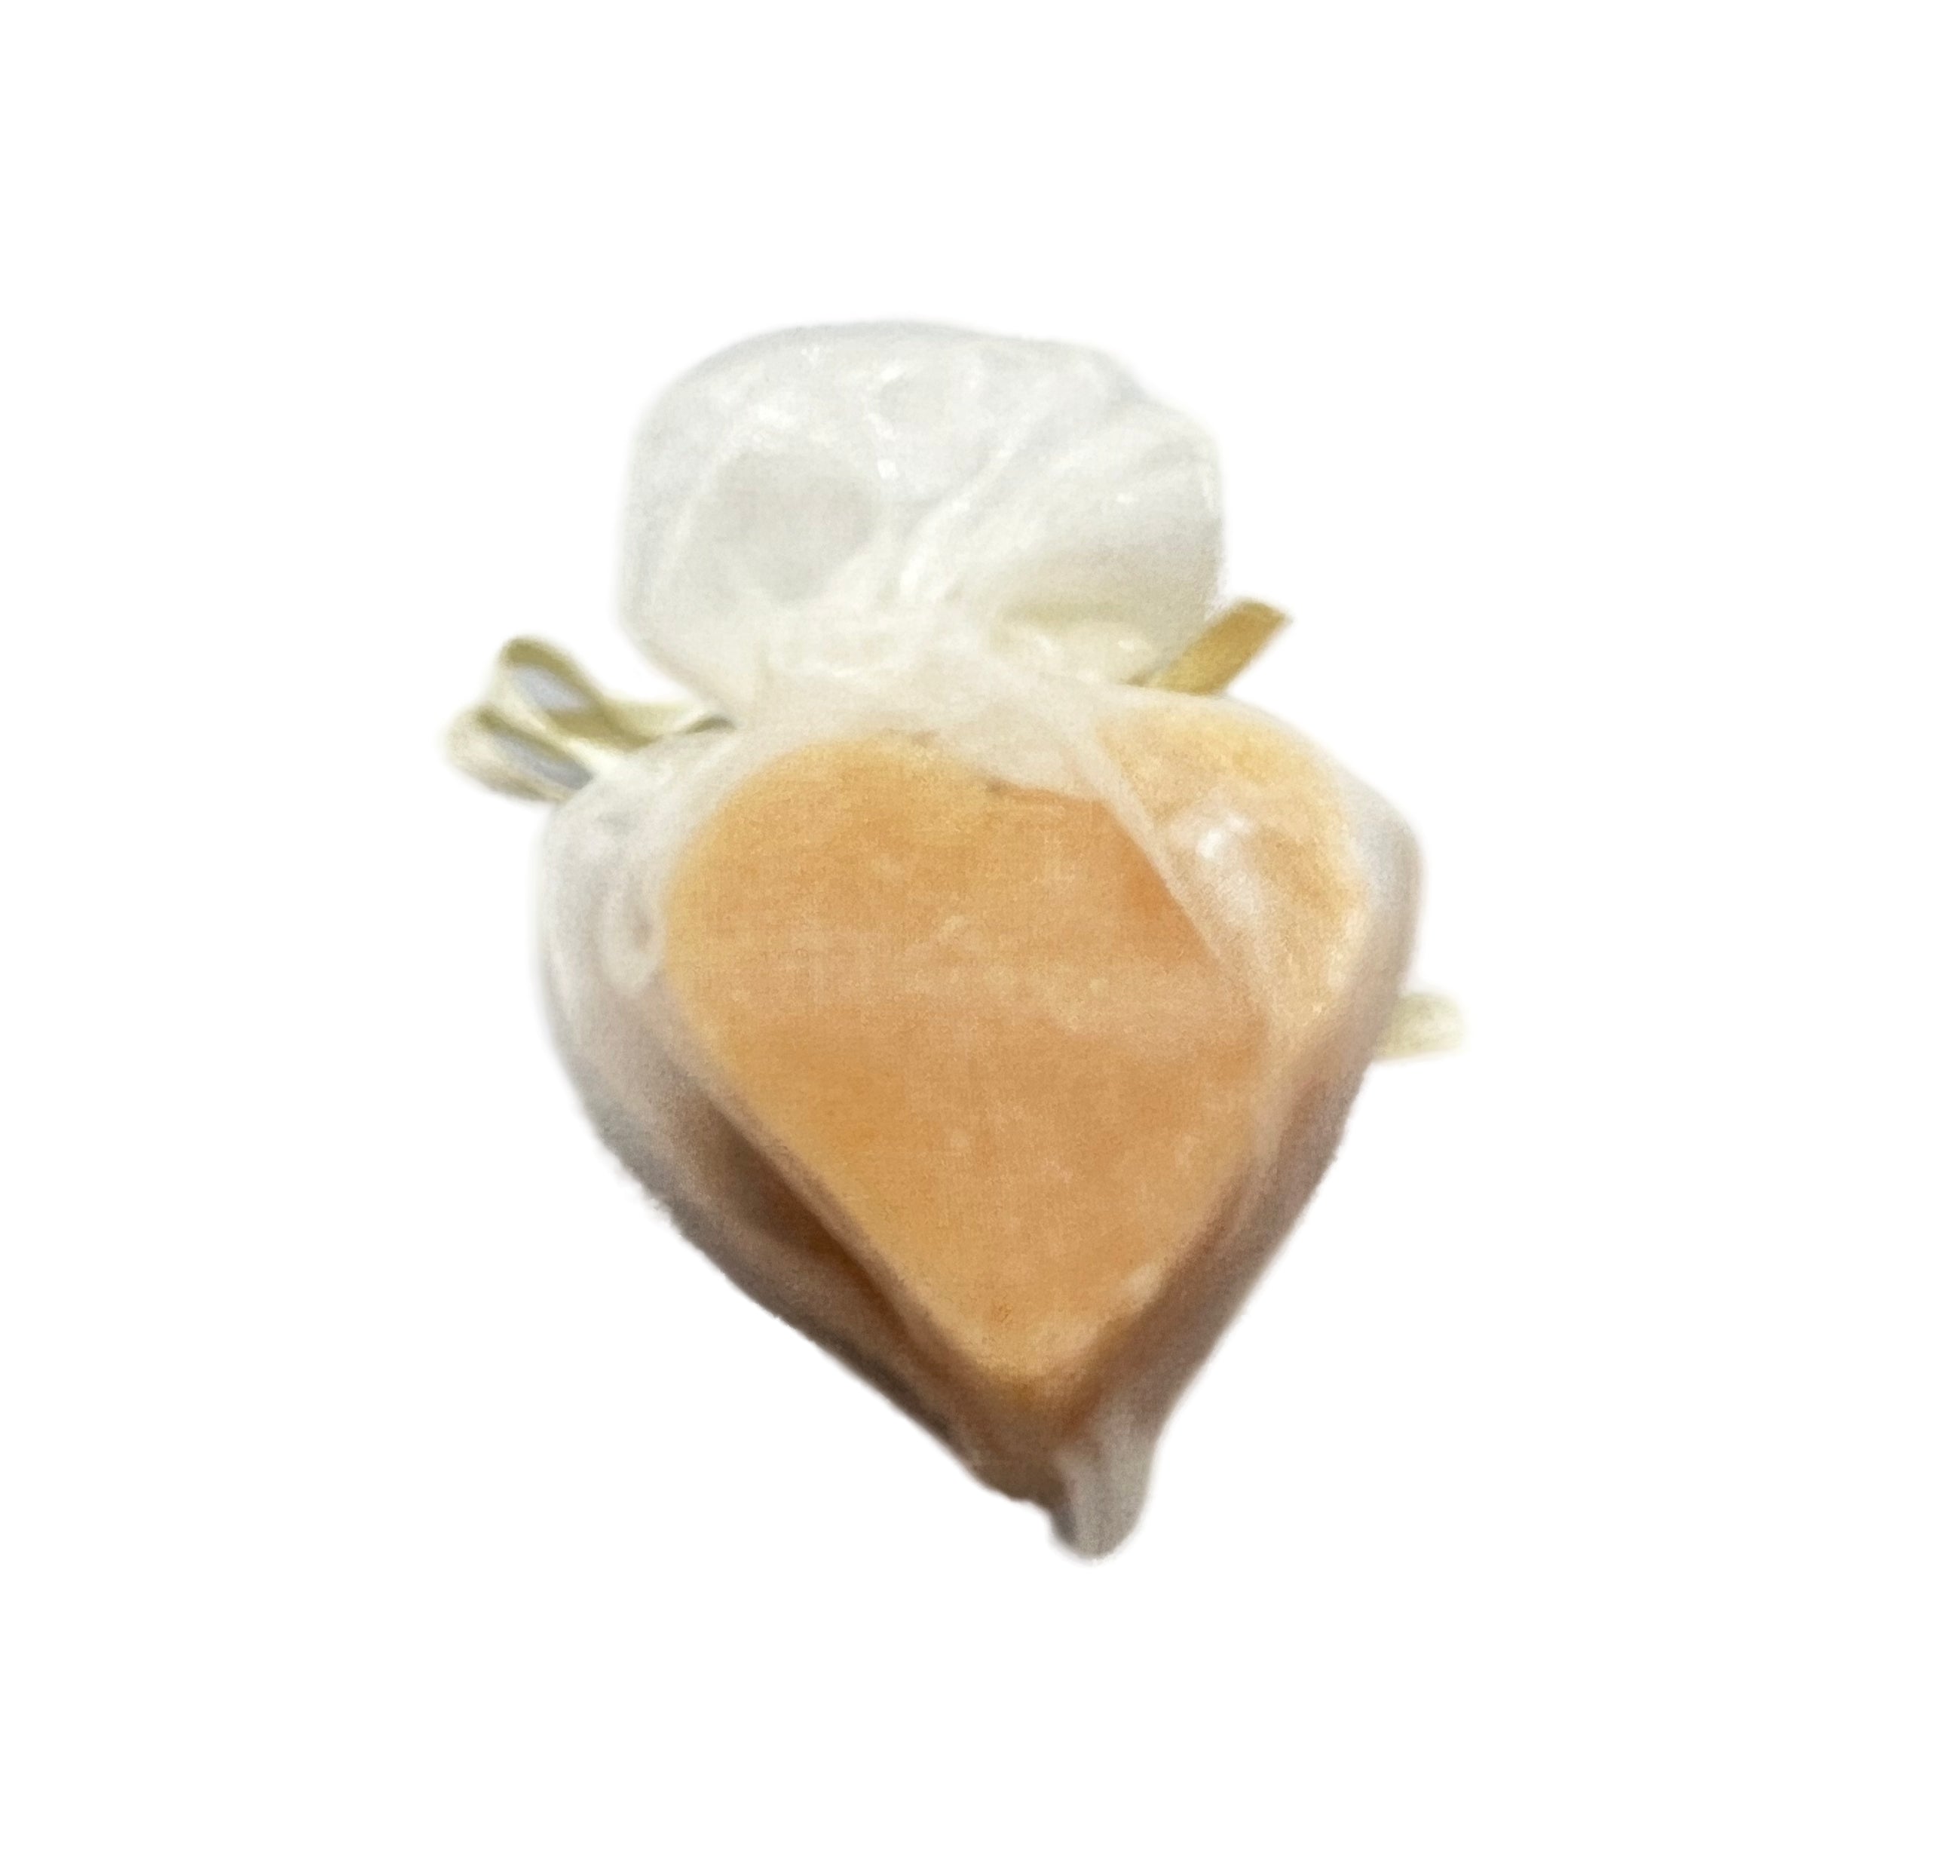 hello Heart shaped soap in white  bag tiny soap jasmin